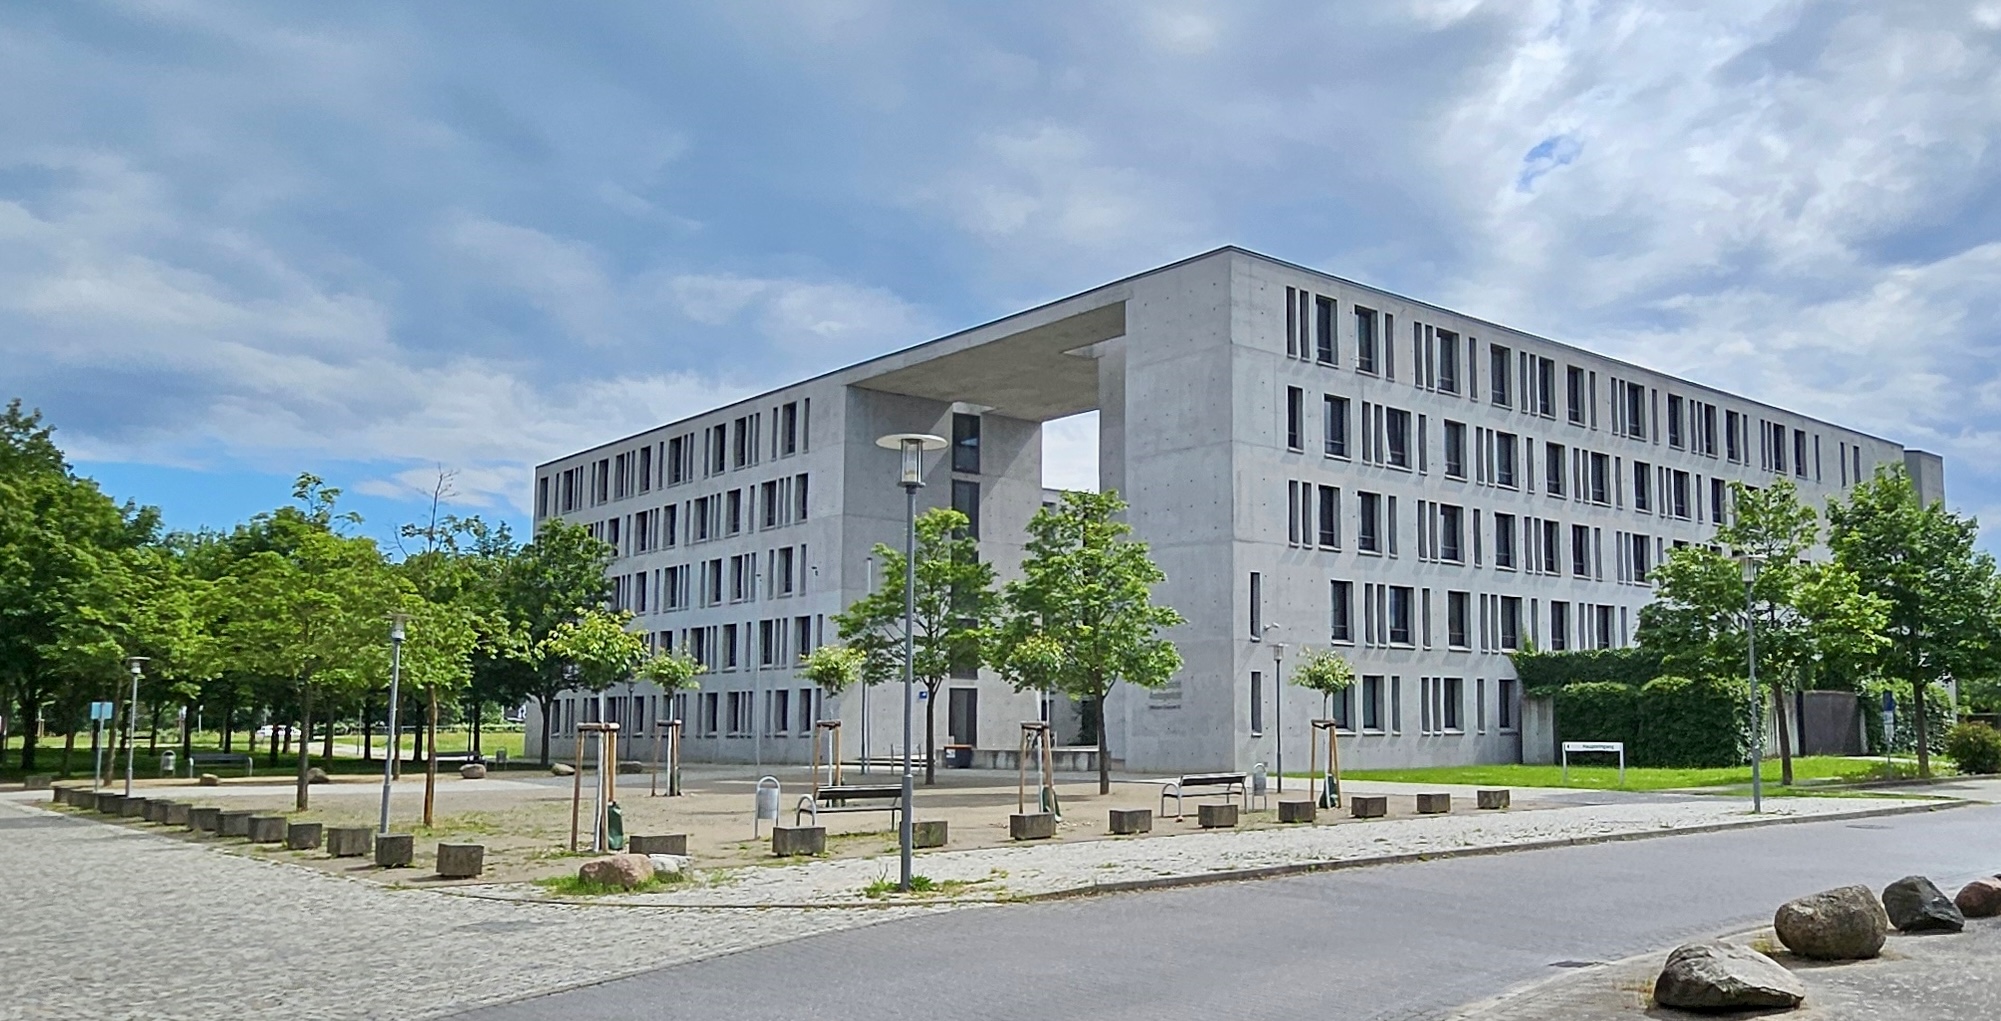 Außenansicht des Gebäudes des Justizzentrums Frankfurt (Oder)